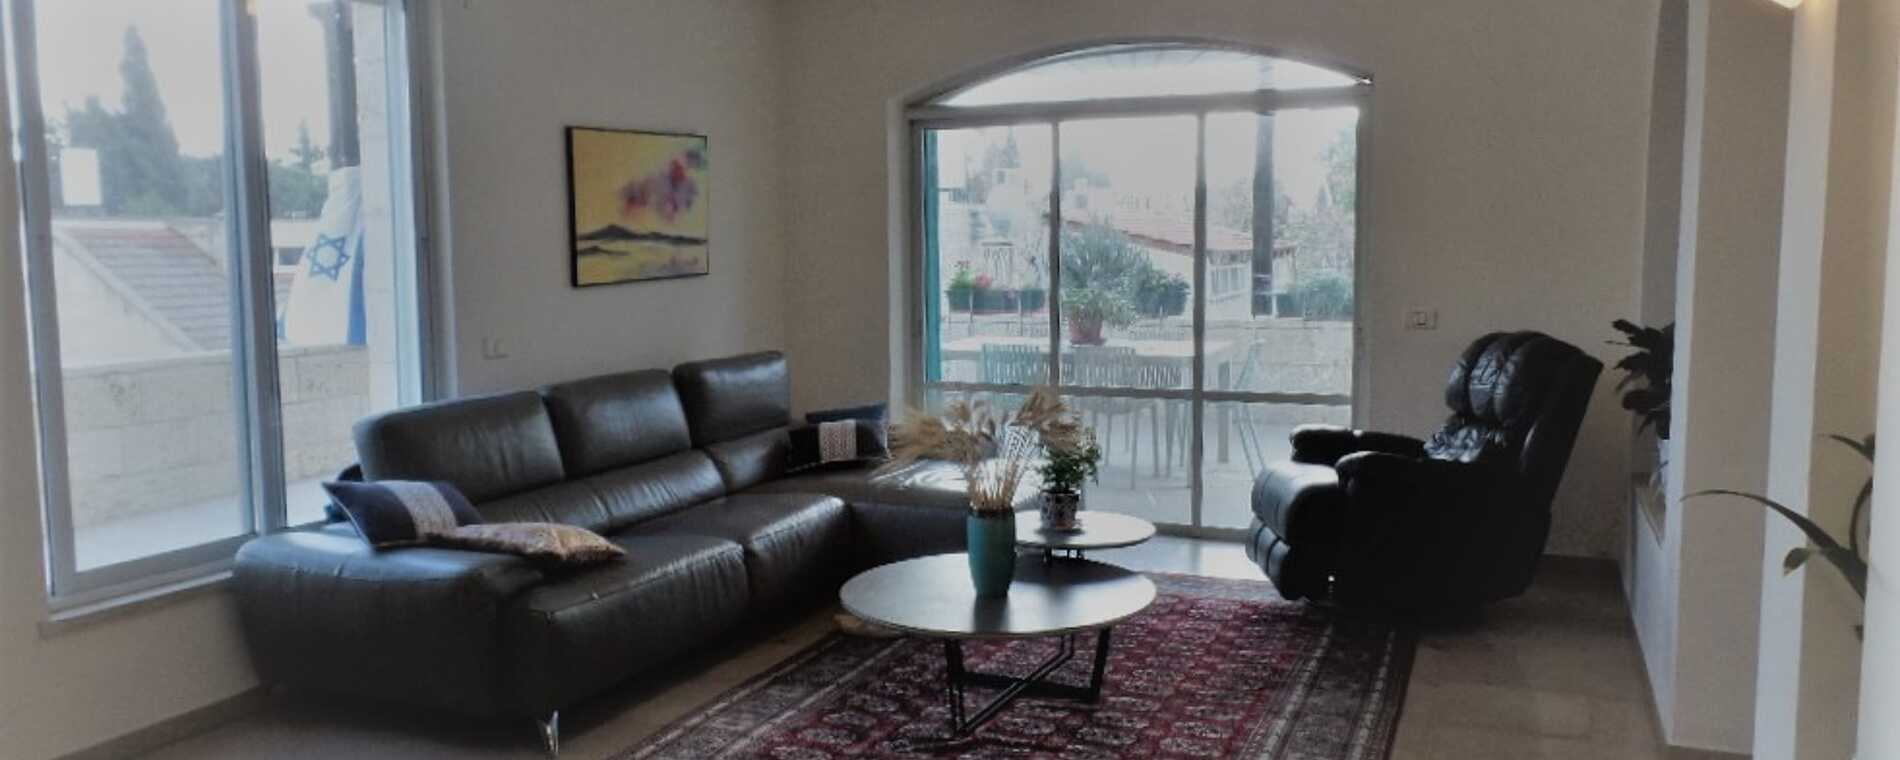 assets/images/properties/ER13 Living Room.jpg